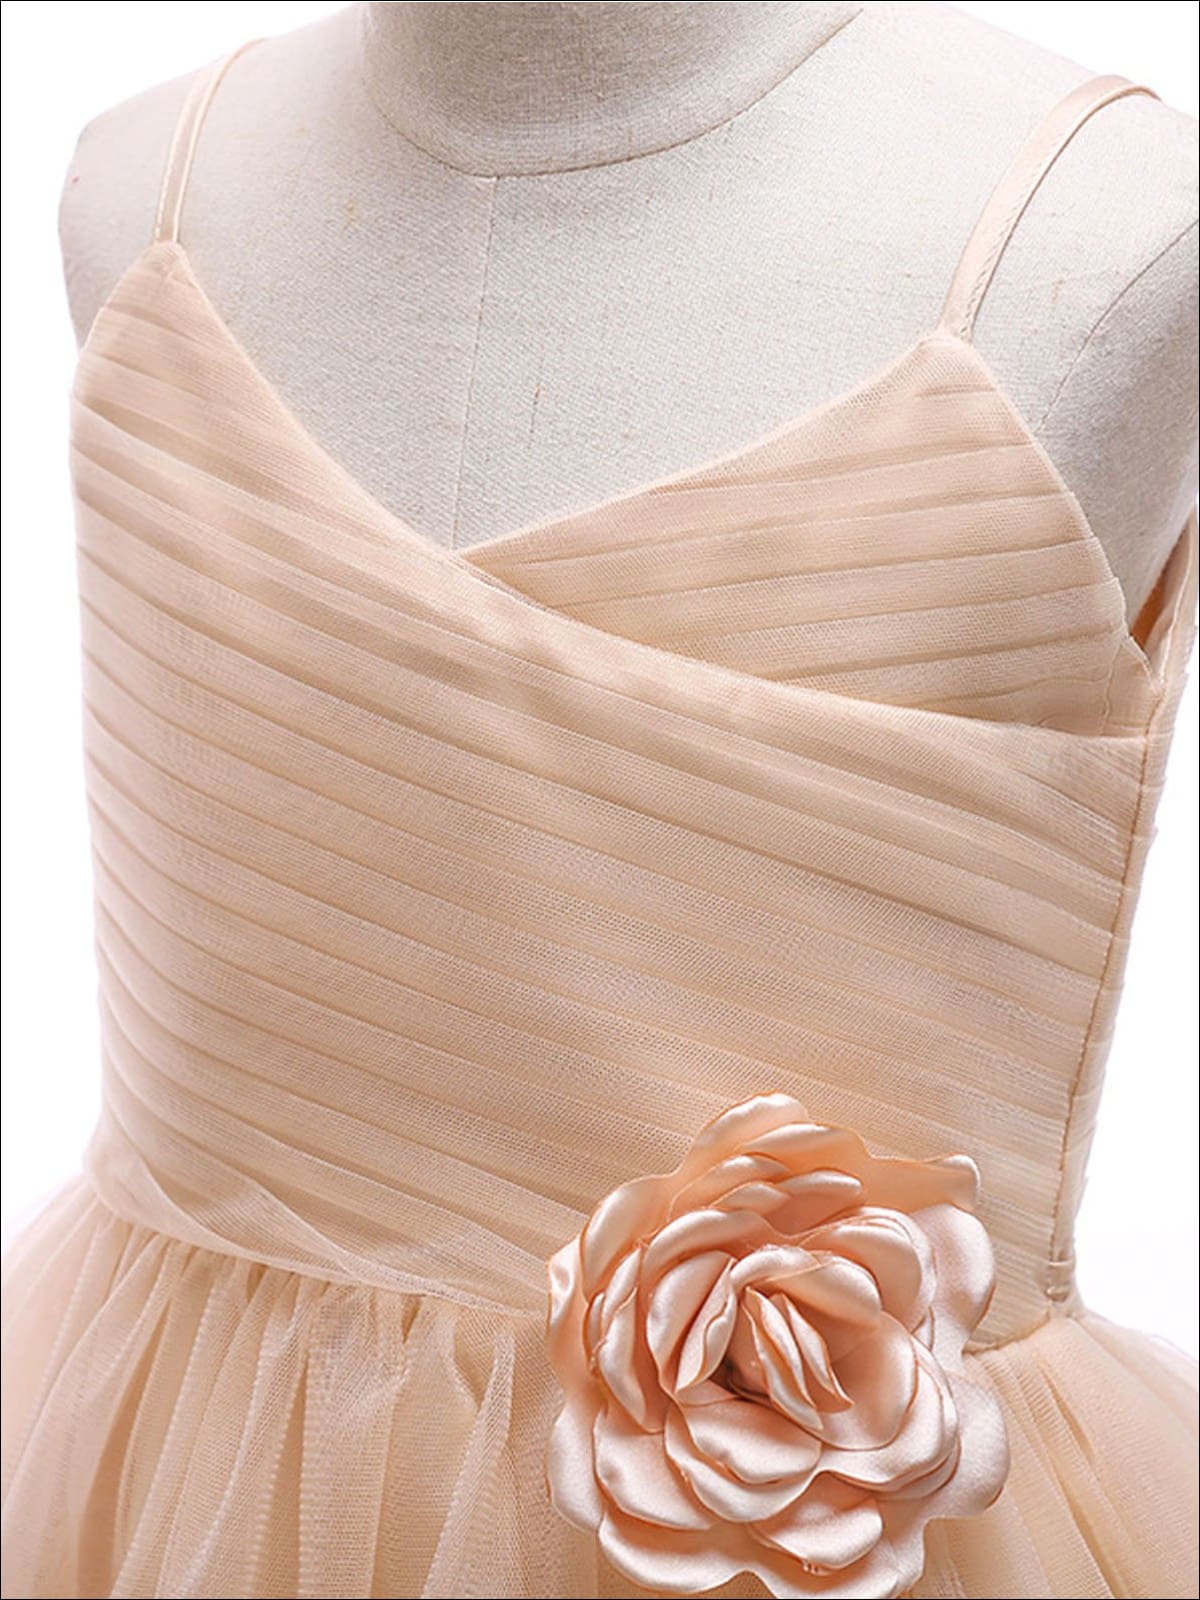 Girls Flower Embellished Sleeveless Tulle Dress - Girls Spring Dressy Dress